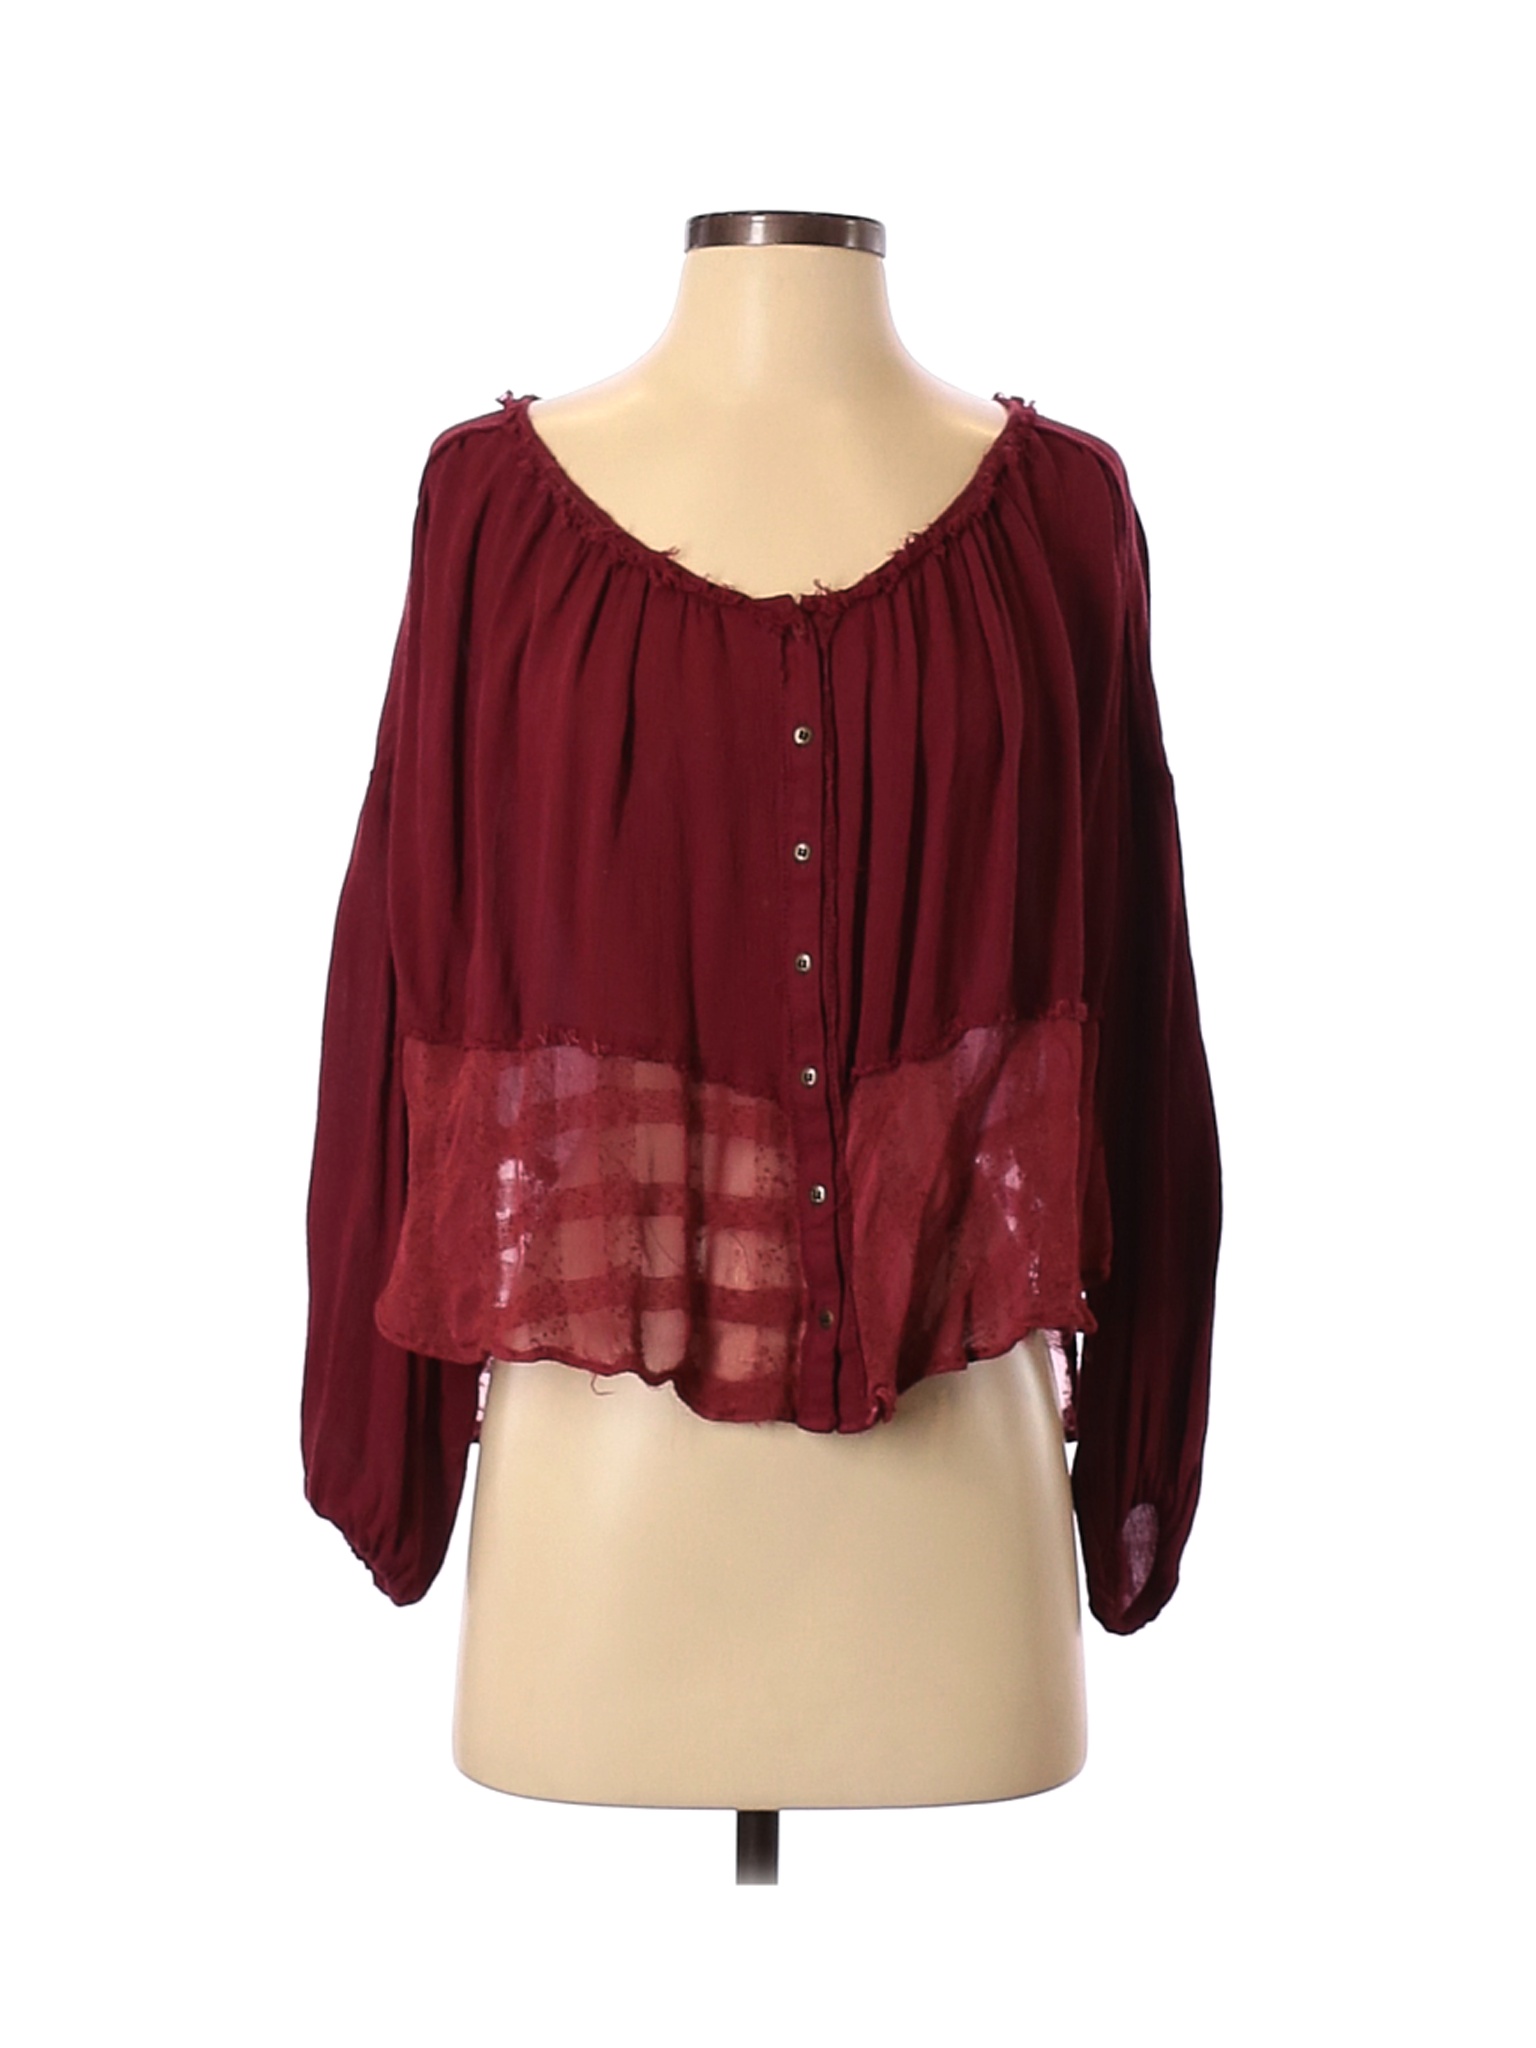 Free People Women Red Long Sleeve Blouse XS | eBay